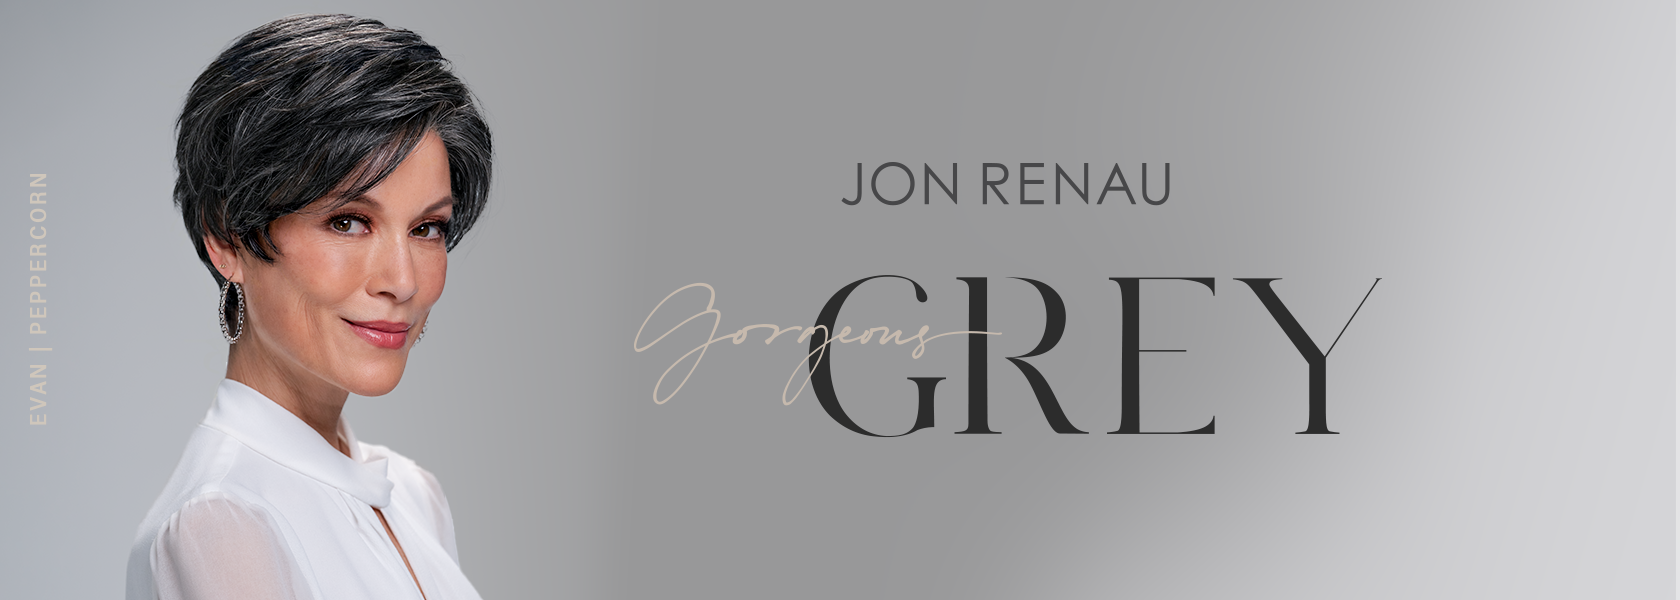 Jon Renau Gorgeous Grey Collection 